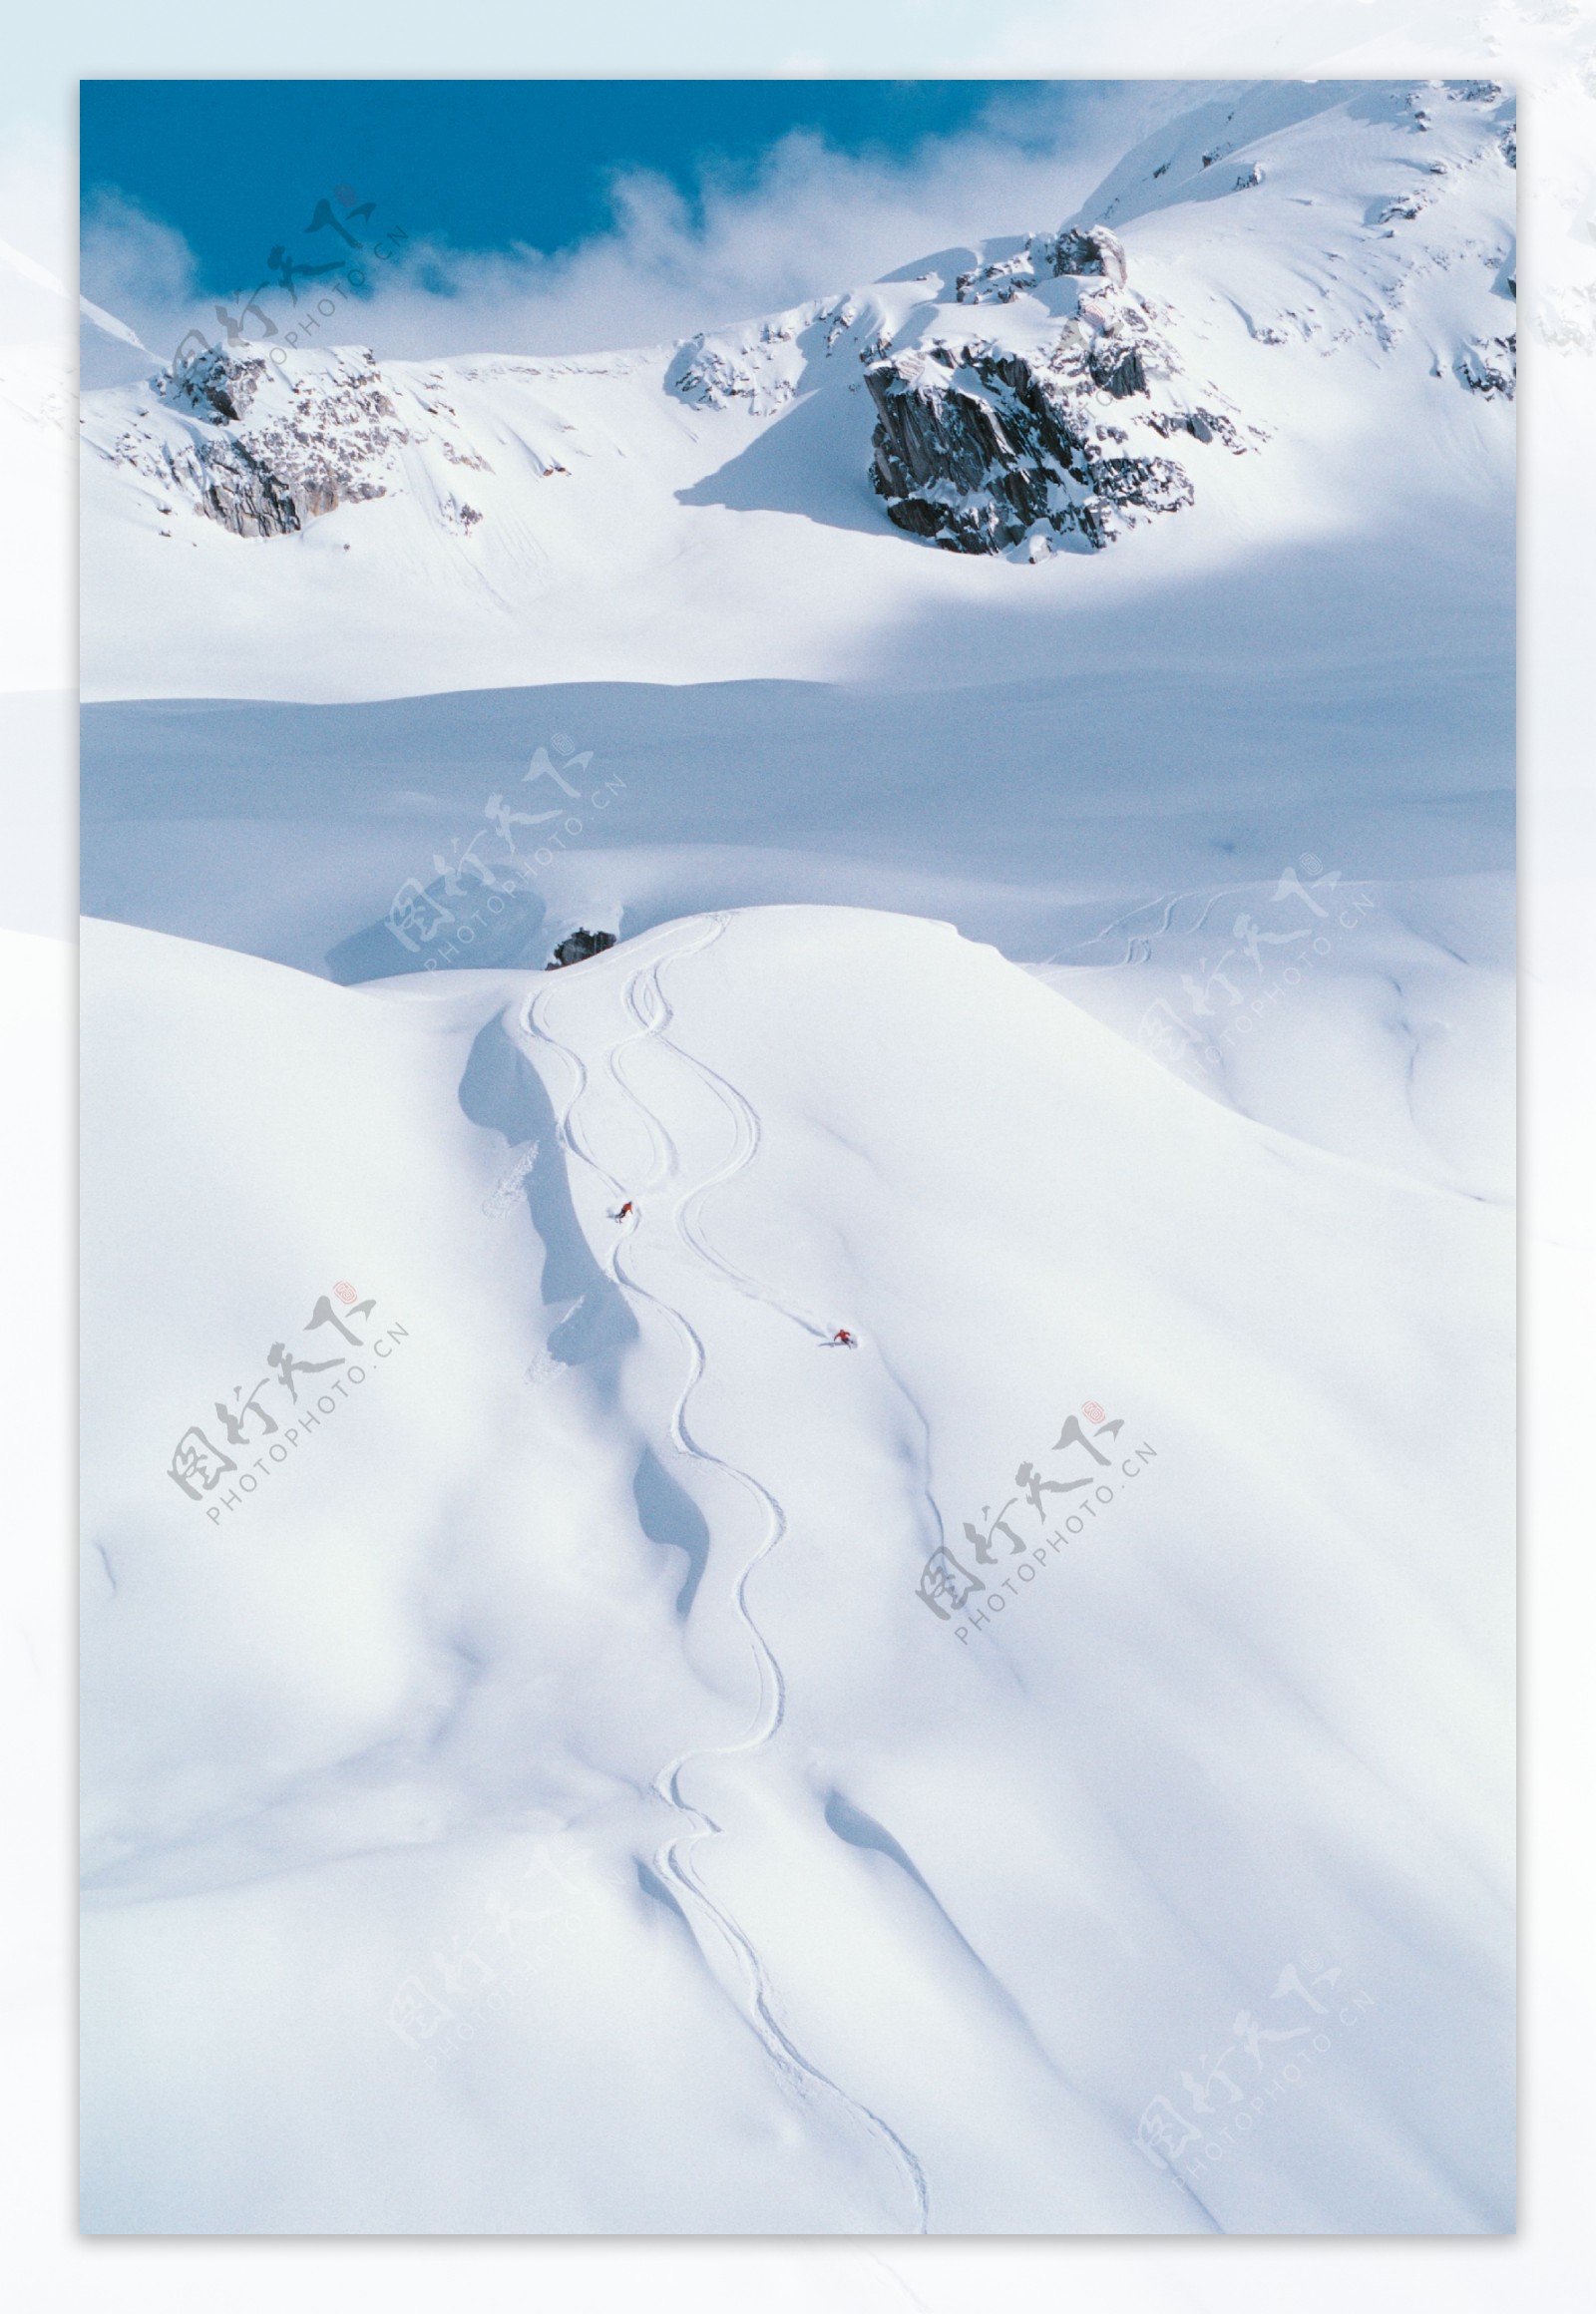 高山划雪远景摄影图片